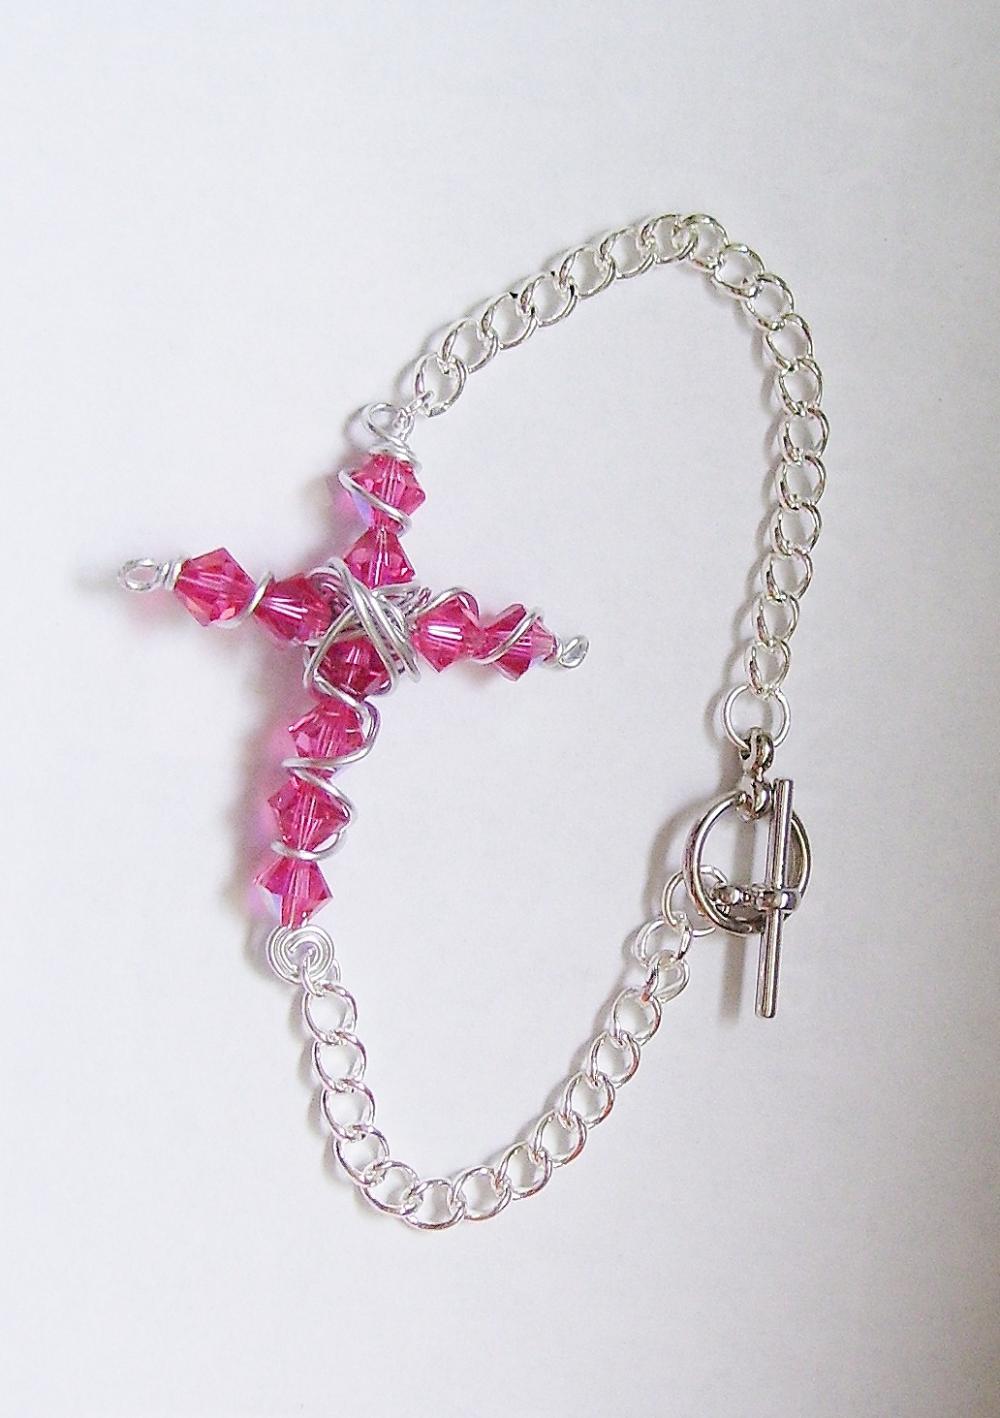 Beaded Christian Cross Bracelet